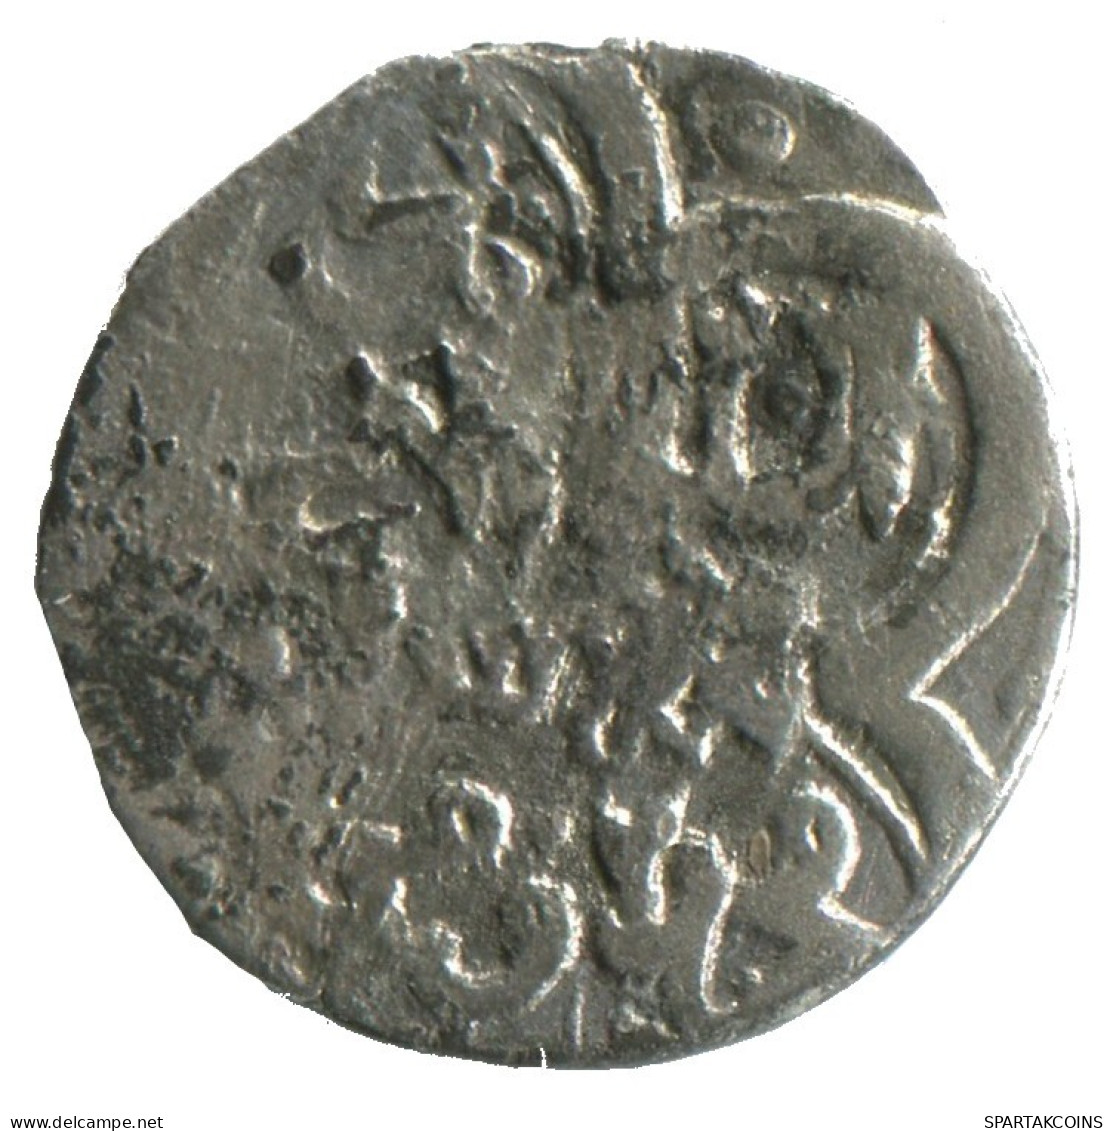 GOLDEN HORDE Silver Dirham Medieval Islamic Coin 1.4g/16mm #NNN2014.8.F.A - Islamiques